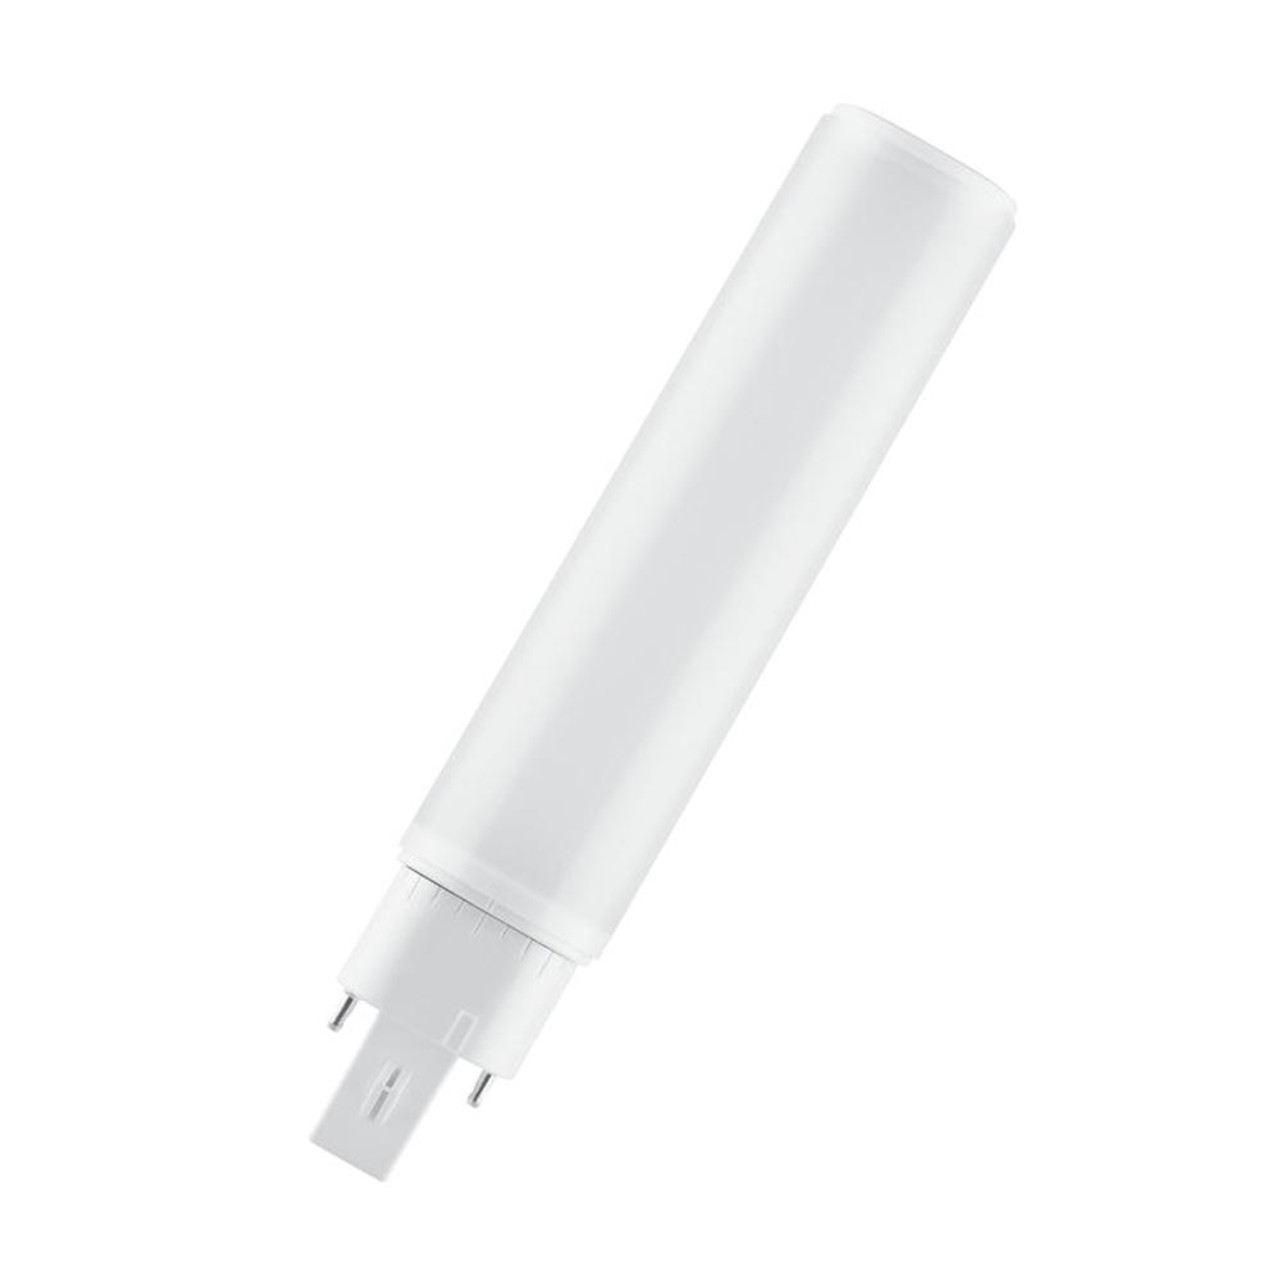 LED PL-C 10W (26W eq.) 2 Pin G24d-3 Warm White Dulux EM and AC Mains